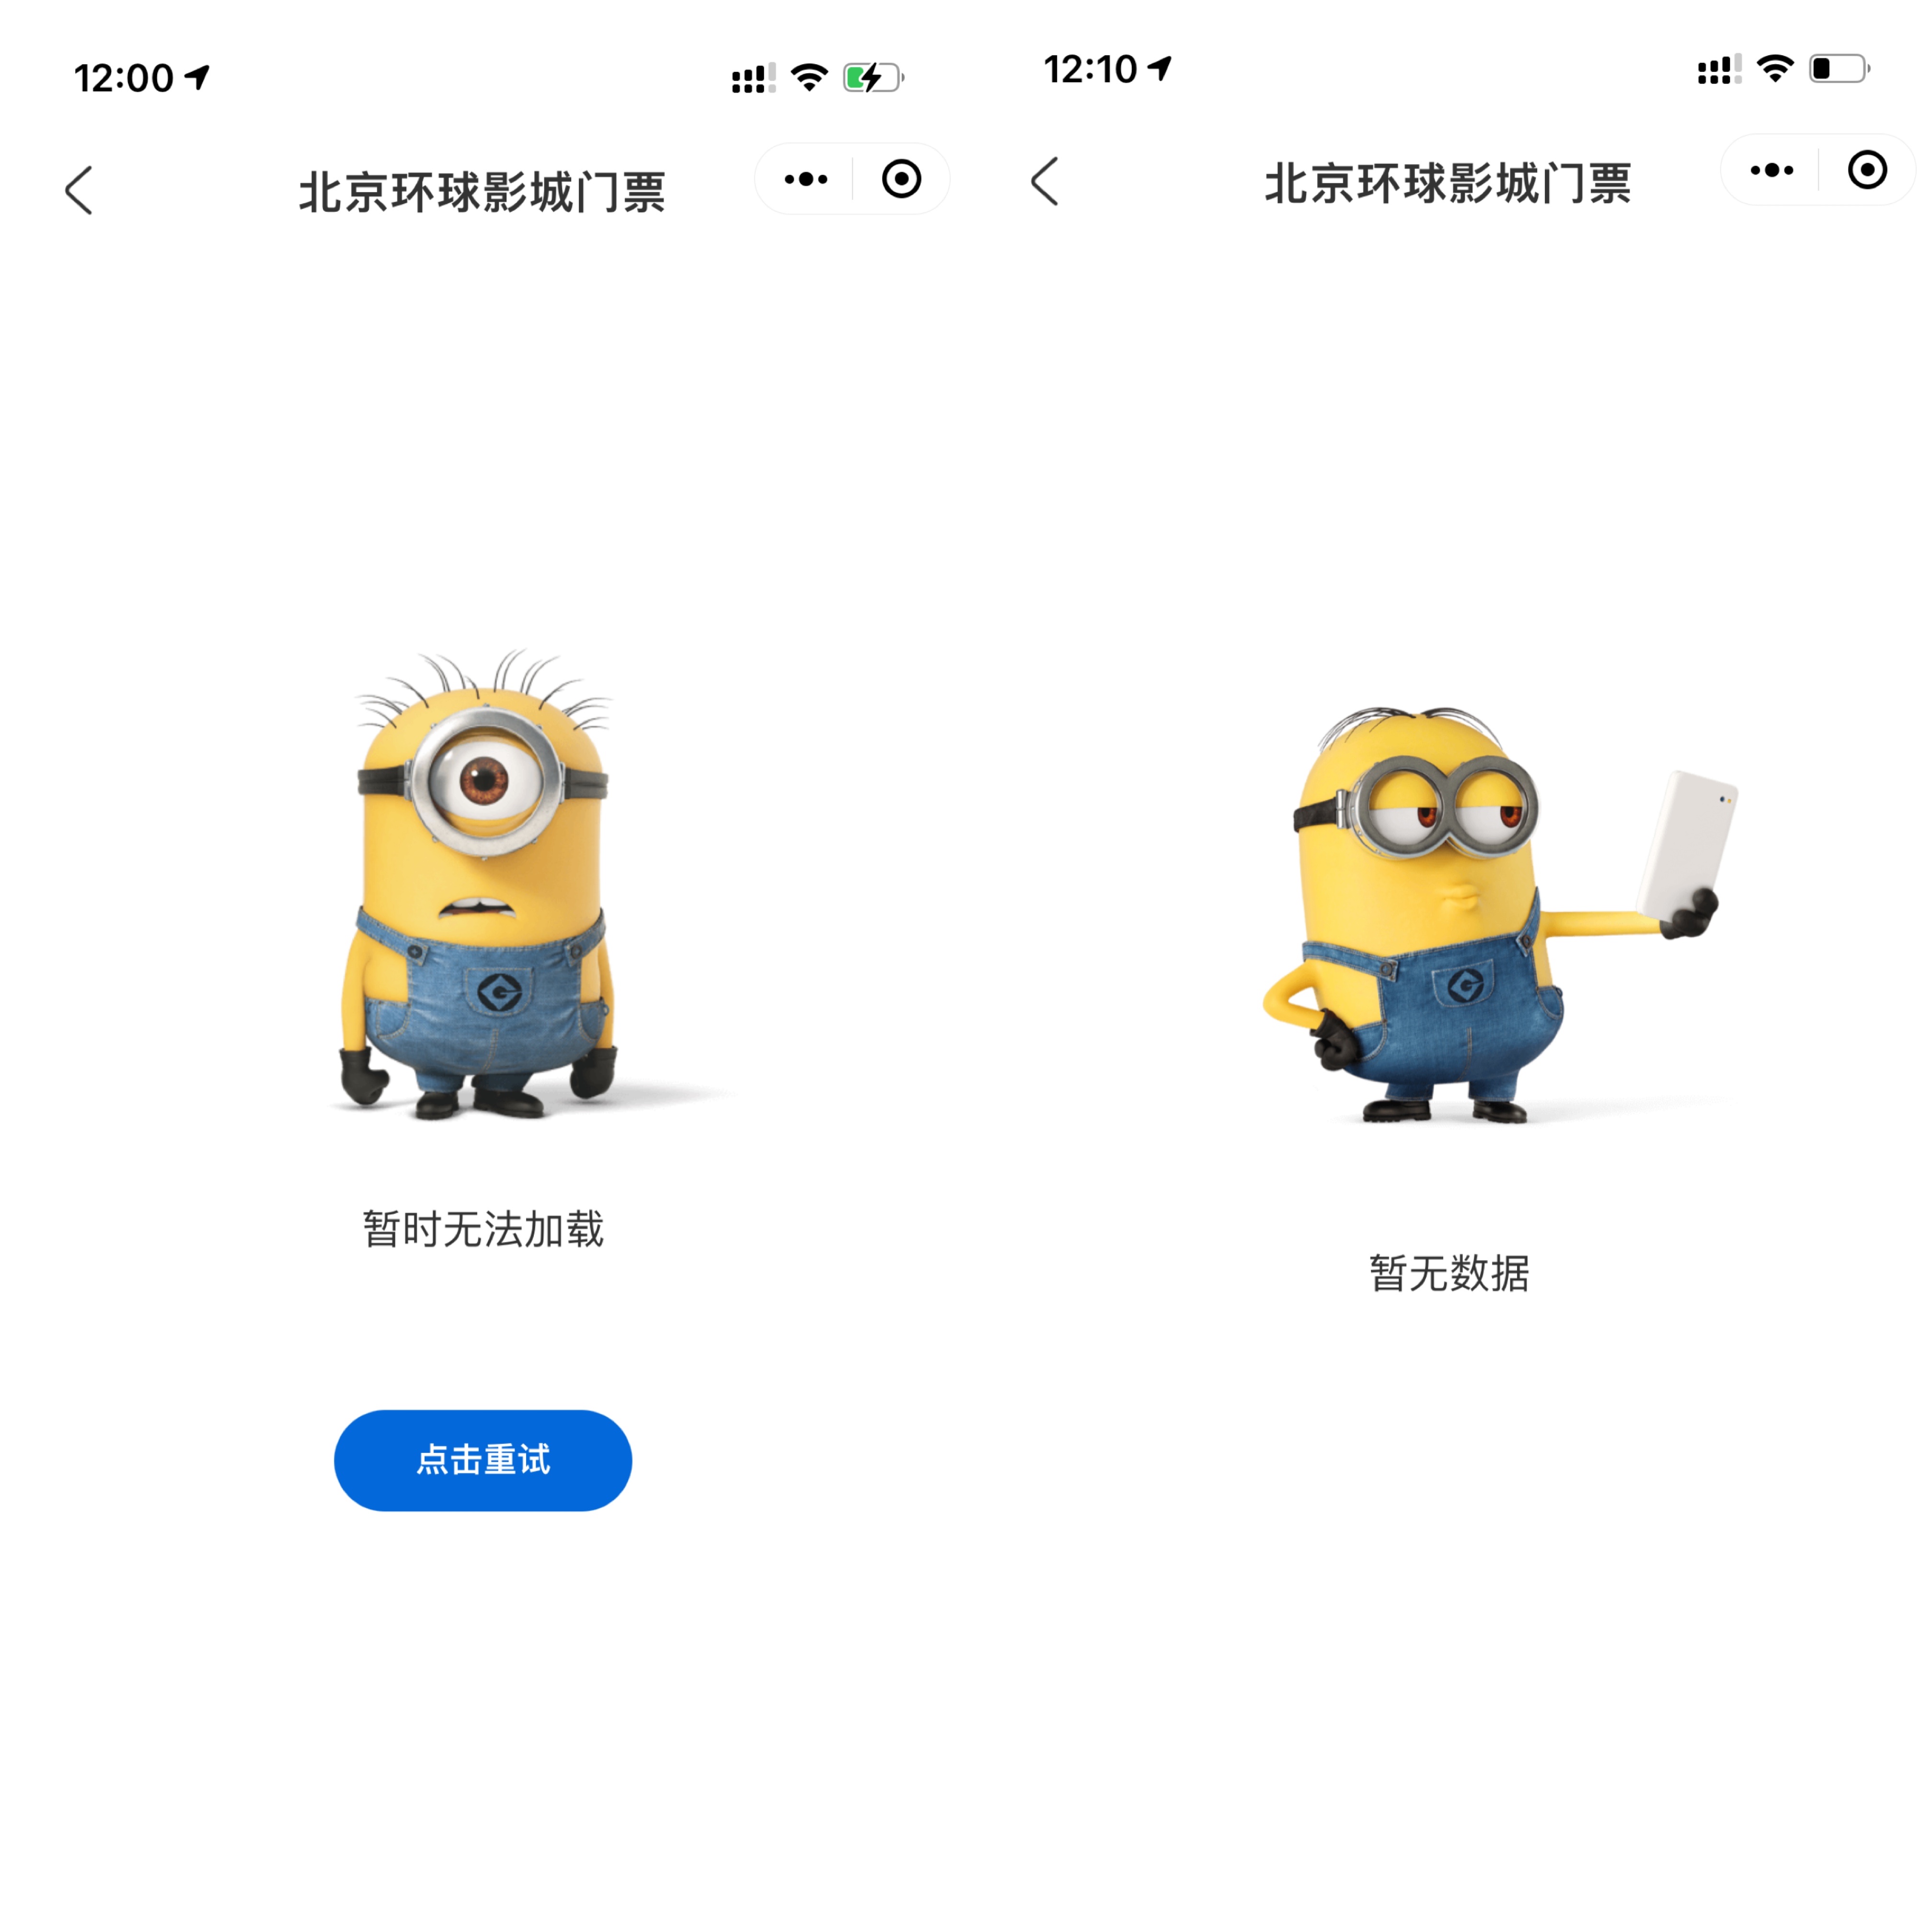 北京环球度假区官方App、微信小程序等官方购票平台一度无法显示。